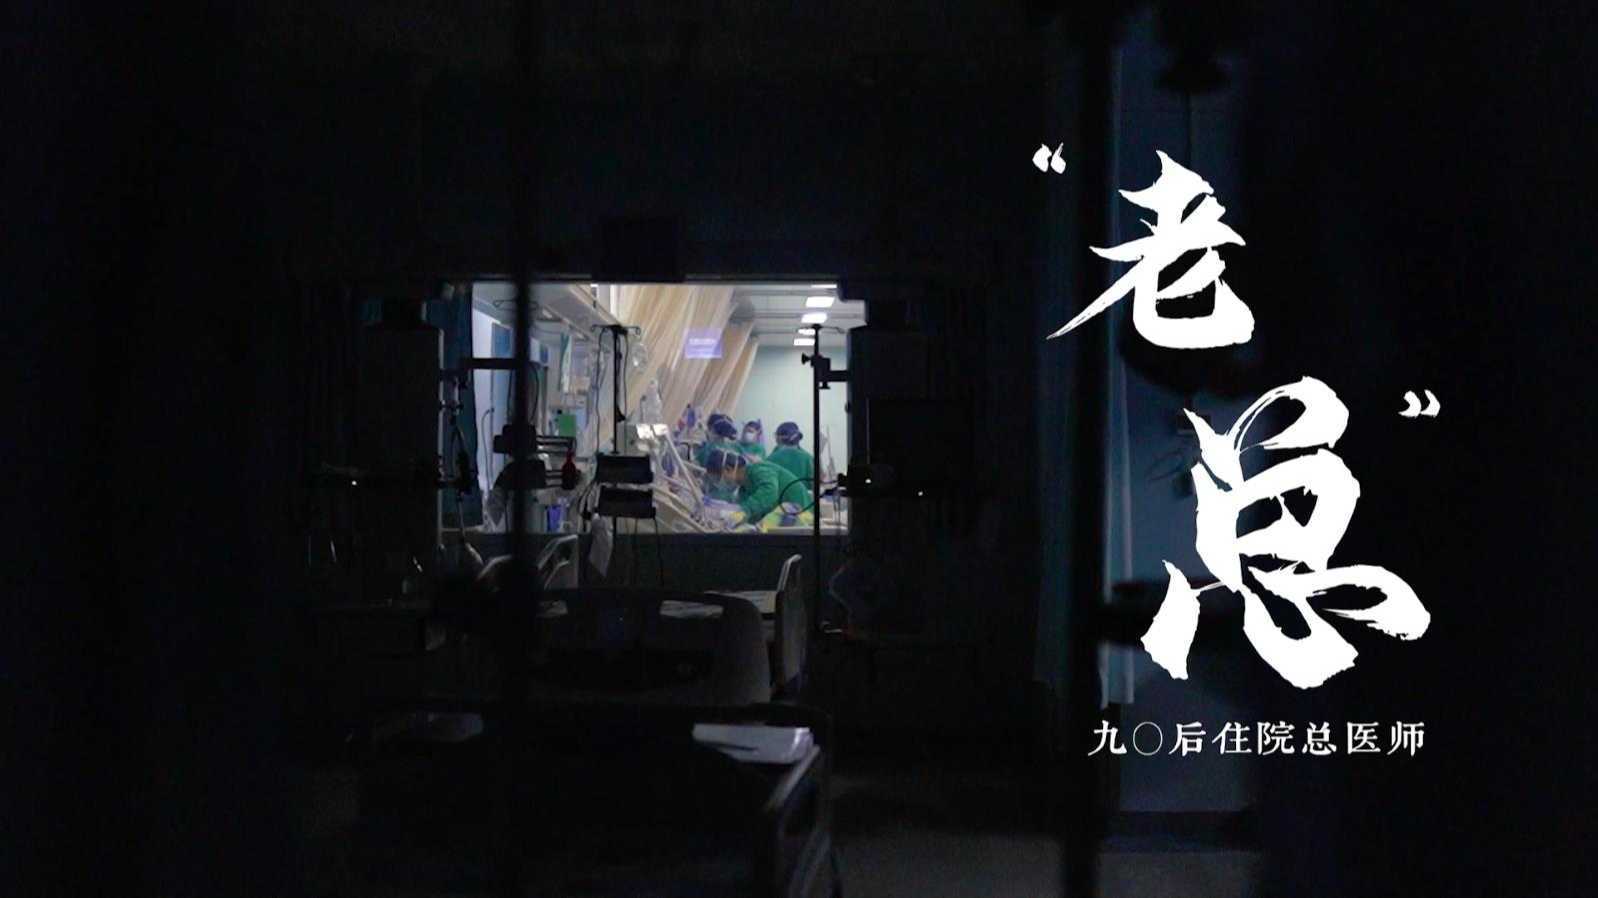 《90后住院老总 》 医师节专题纪录片